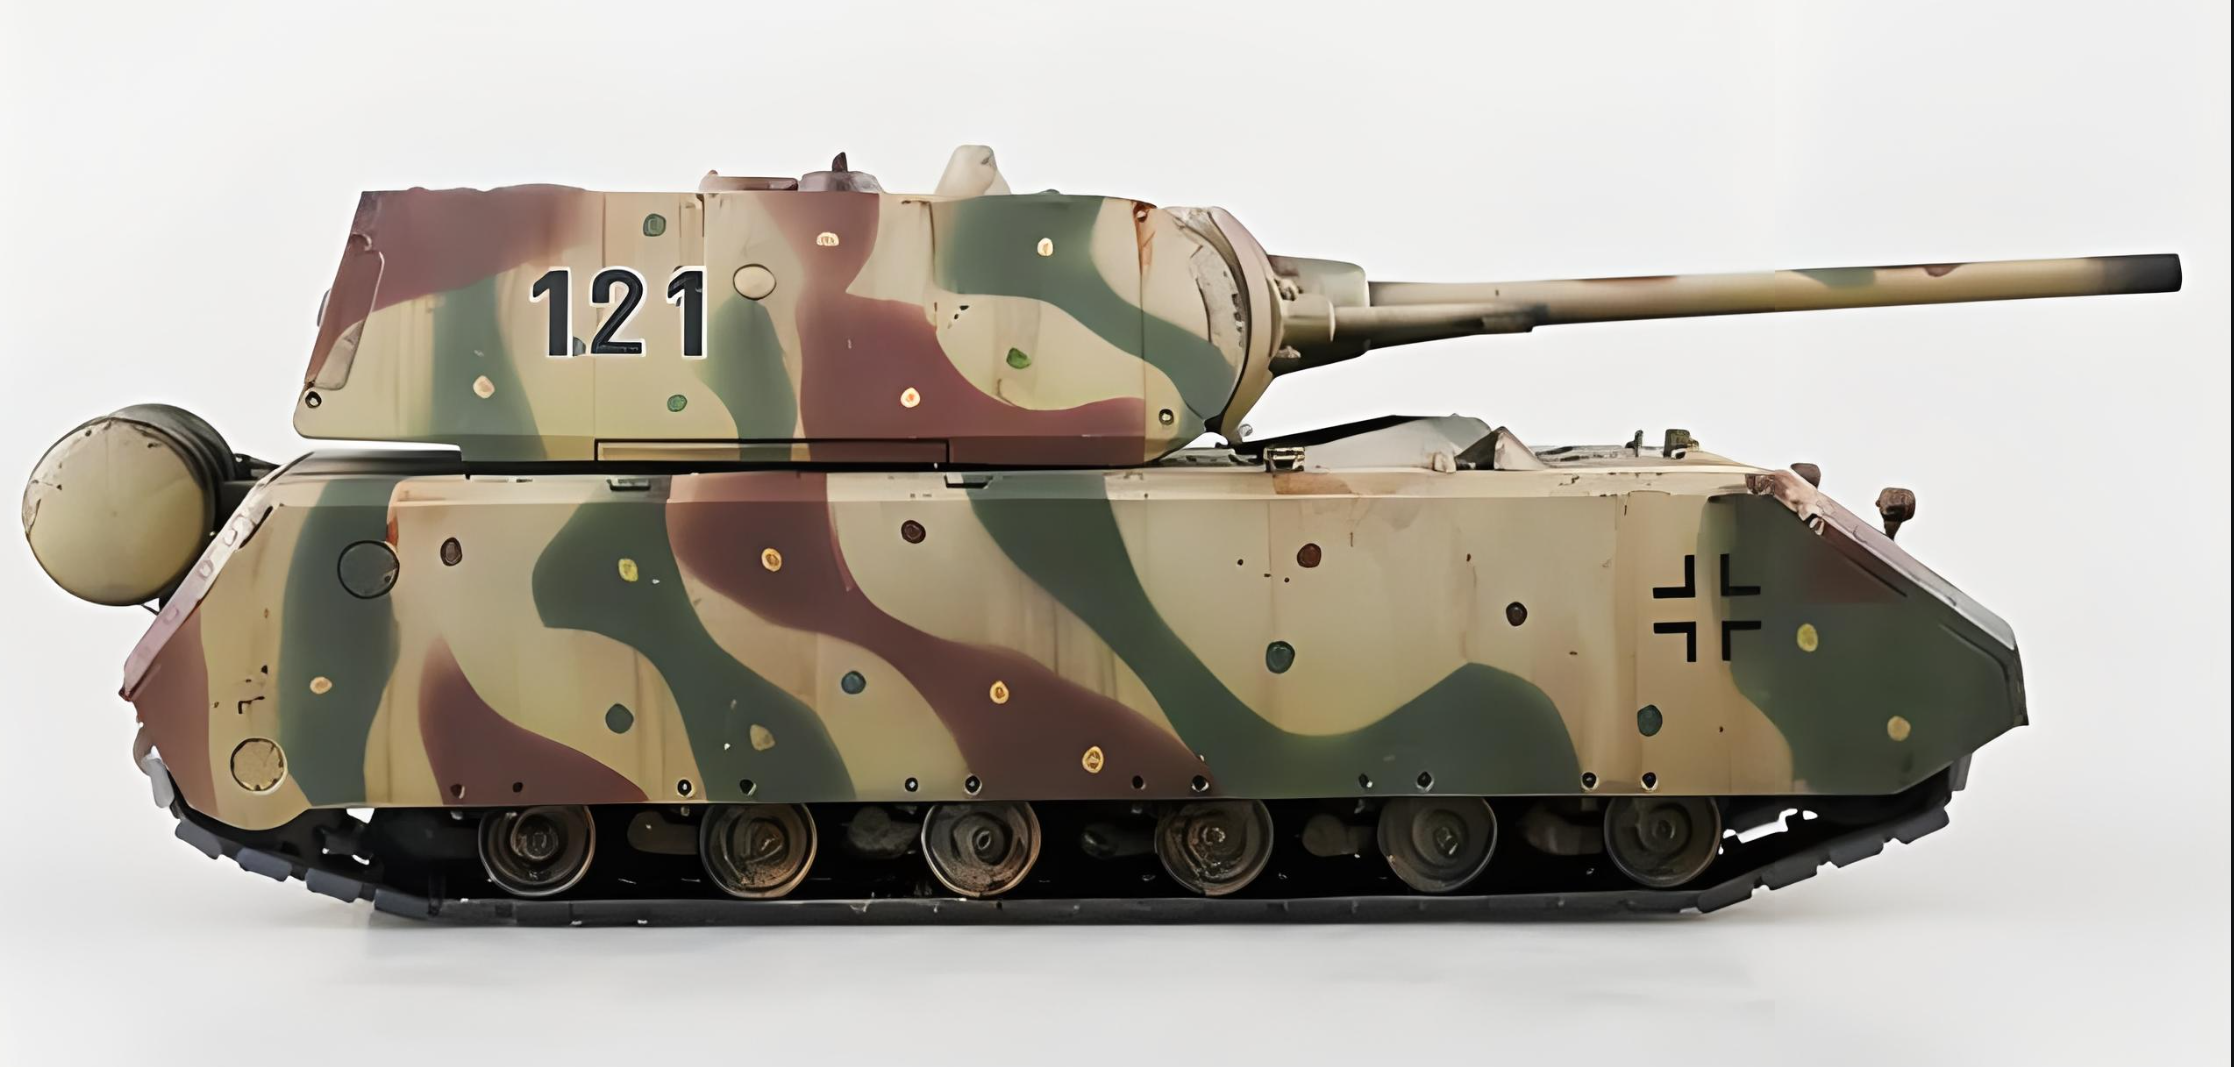 【鼠式坦克】大家都希望出鼠式坦克，本贴专门收集鼠式坦克提案